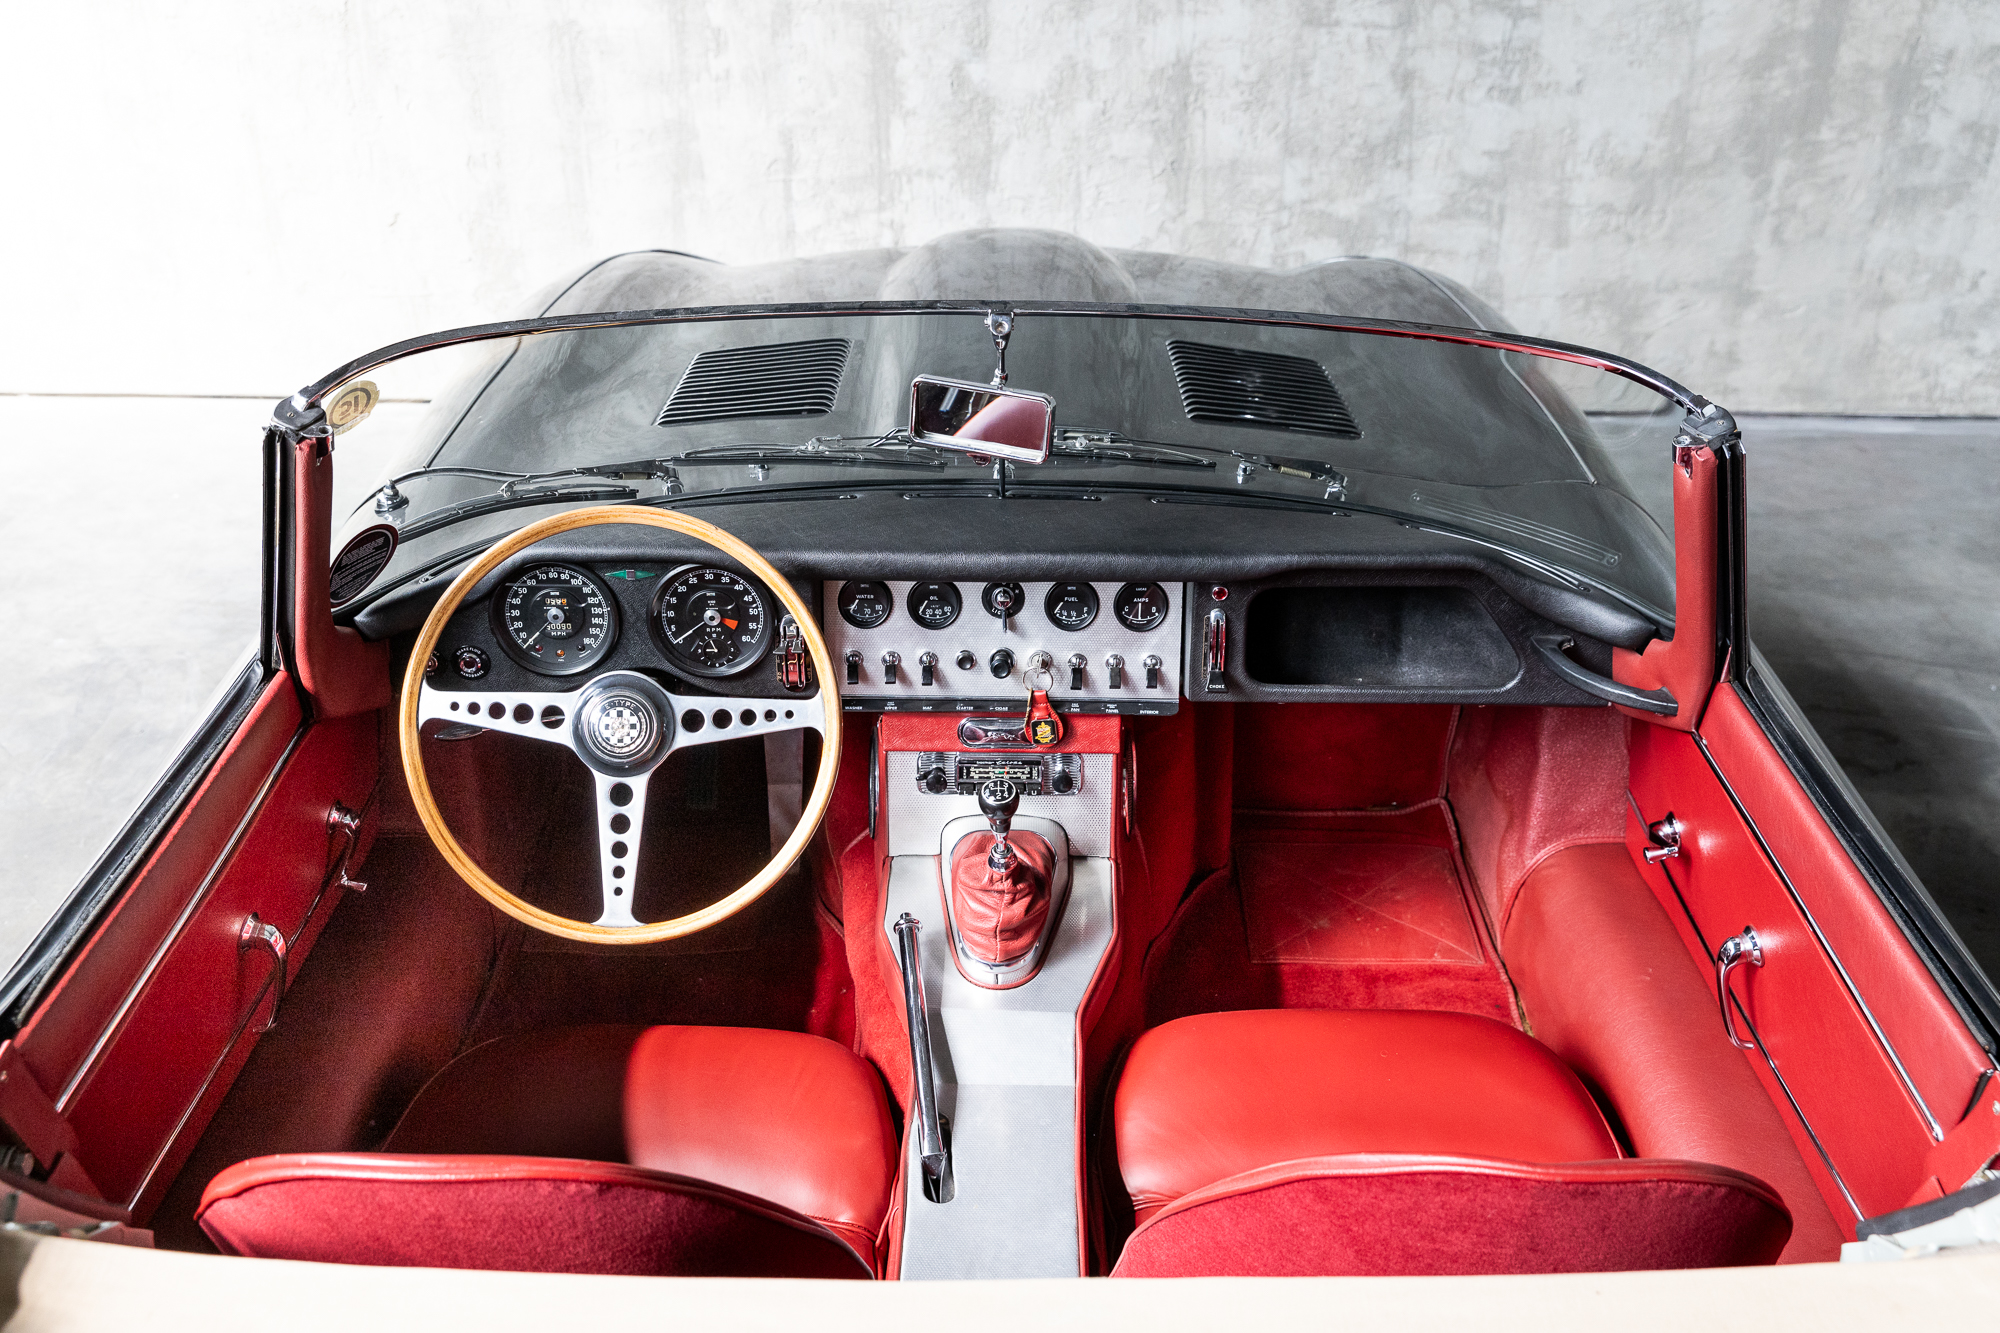 1961-Jaguar-EType-OBL-for-sale-DriveCity-Sales-72dpi-25